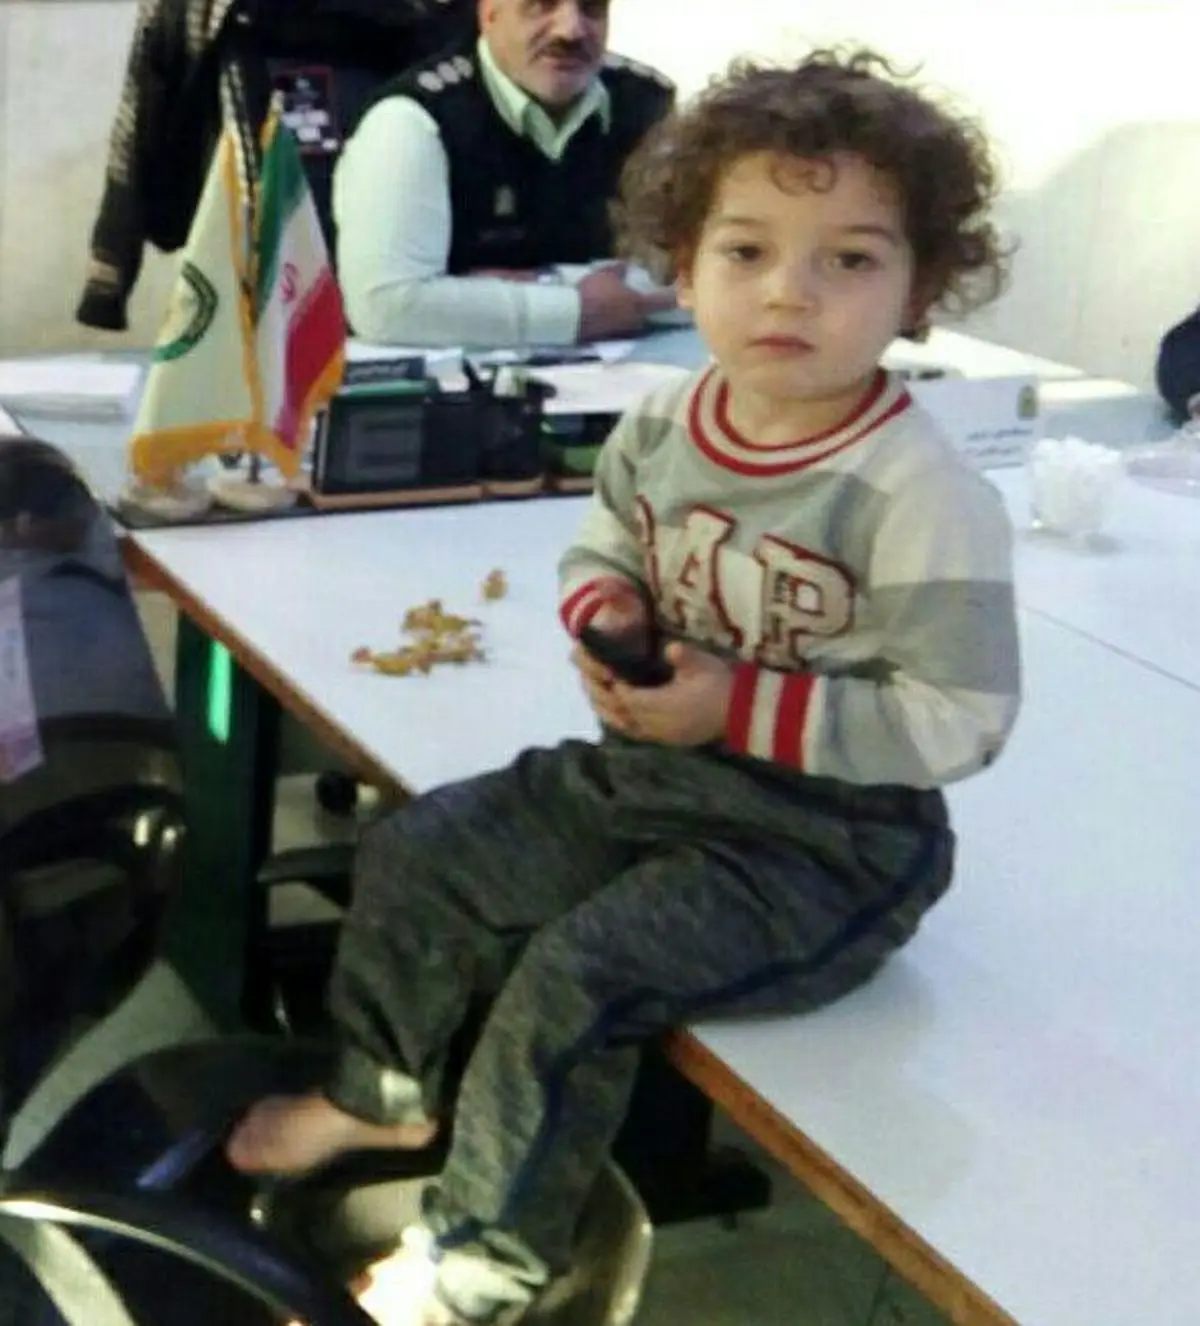  رهایی کودک خردسال از دست گروگانگیران شیطان صفت در تهران